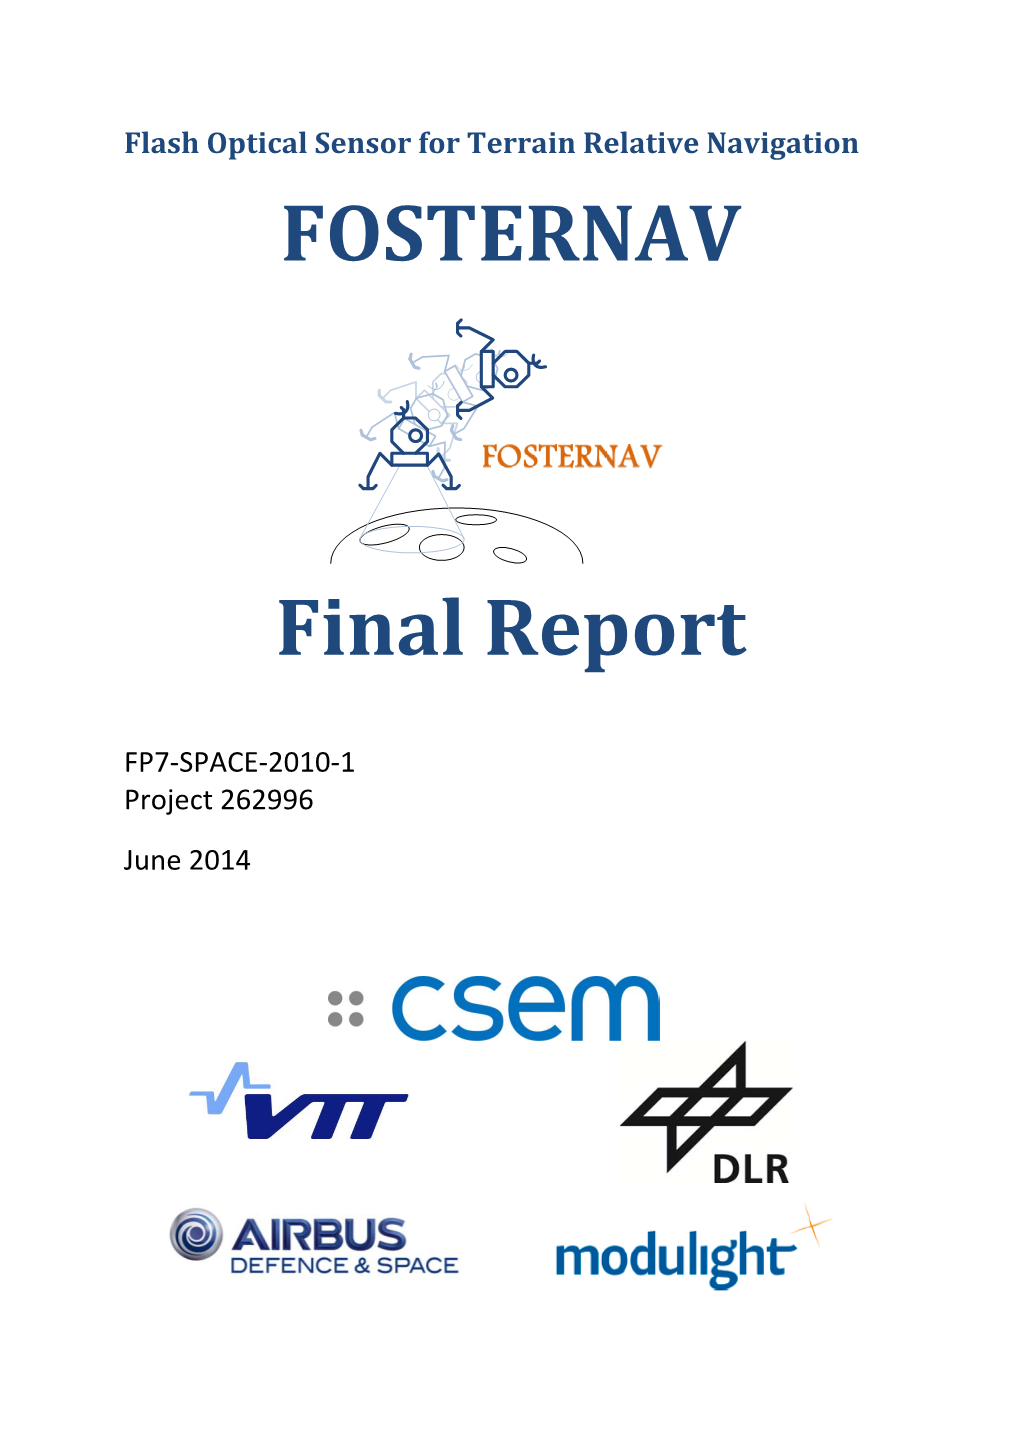 FOSTERNAV Final Report